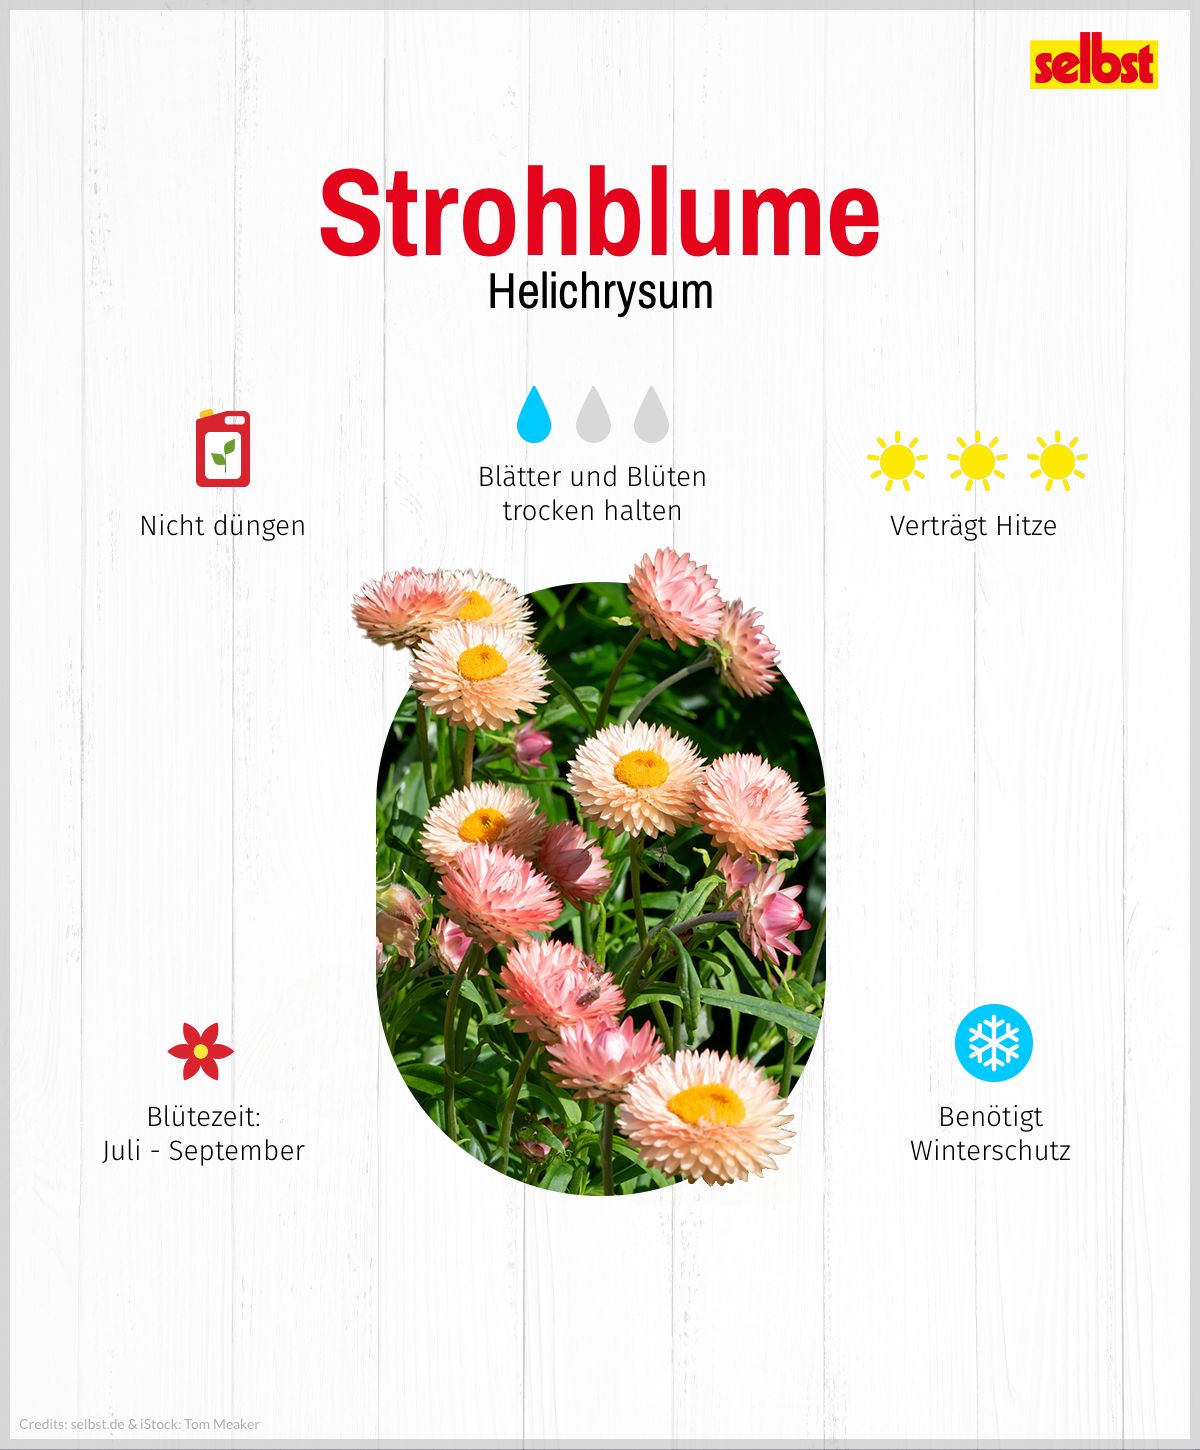 Pflanzenportrait Strohblume: Standort, Dünger, Blütezeit, Gießen und Winterschutz